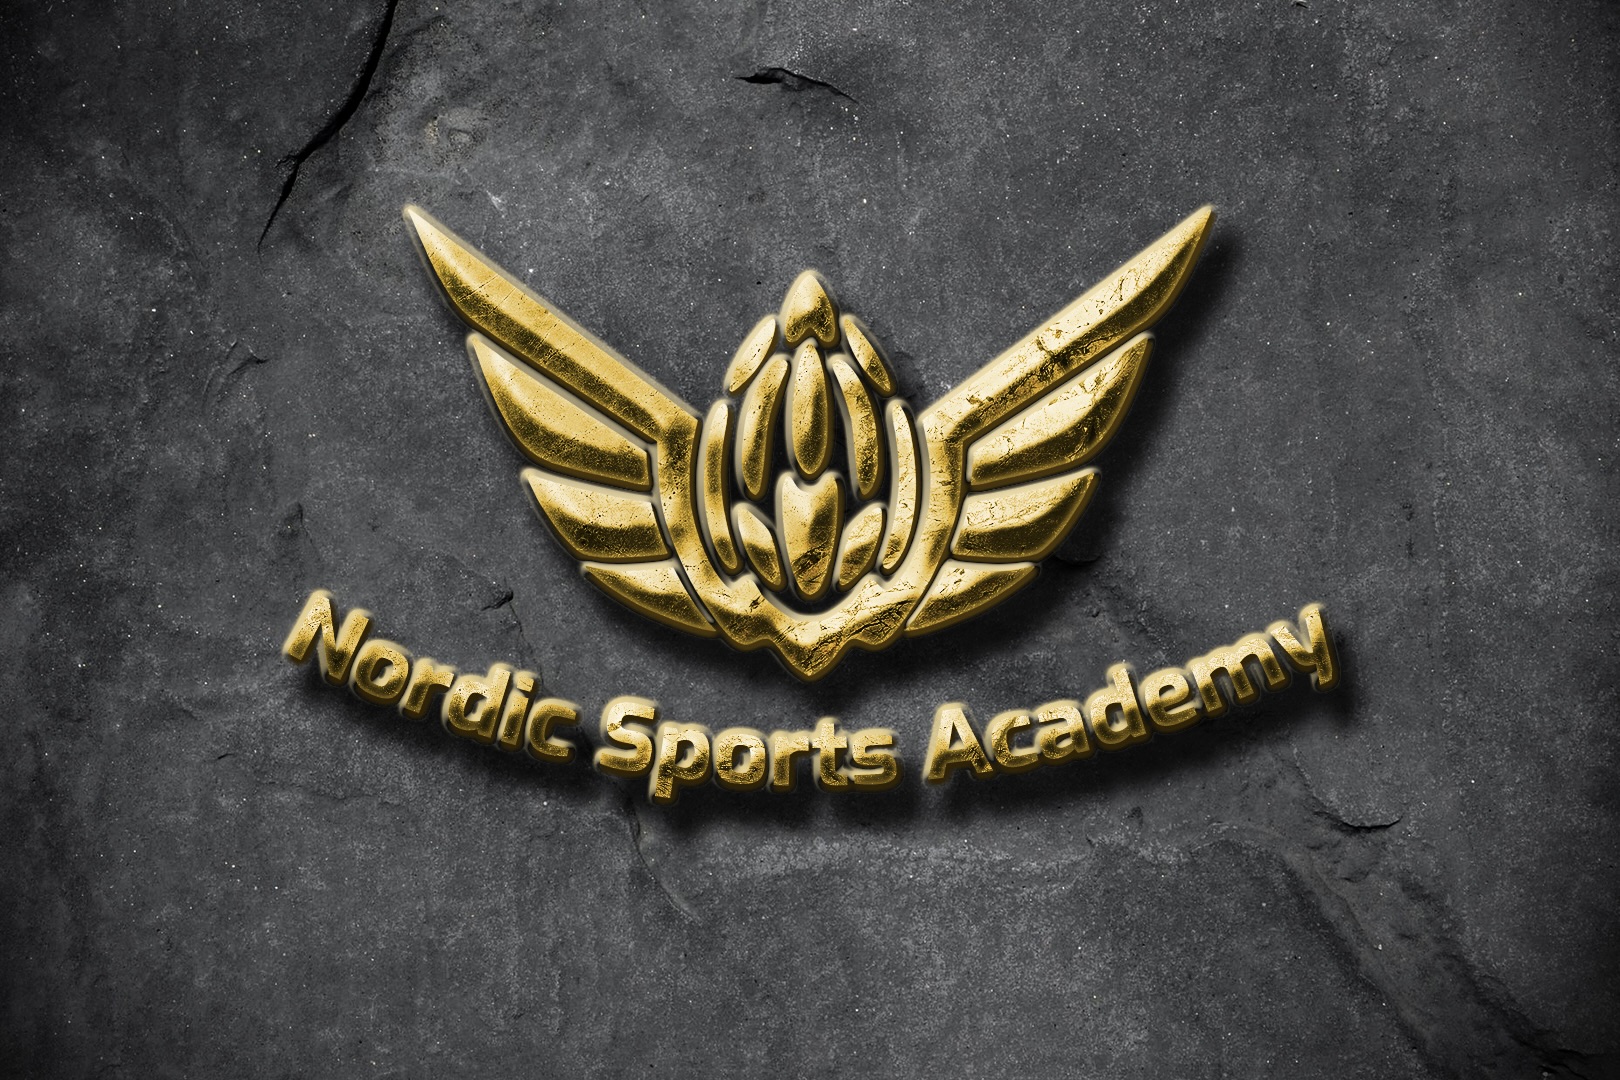 Nordic Sports Academy är en ideell förening som består av två sektioner, en för cykel och en för E-sport. Föreningen har arbetat aktivt med Fontänhuset i Båstad som riktar sig till människor som har upplevt psykisk ohälsa.